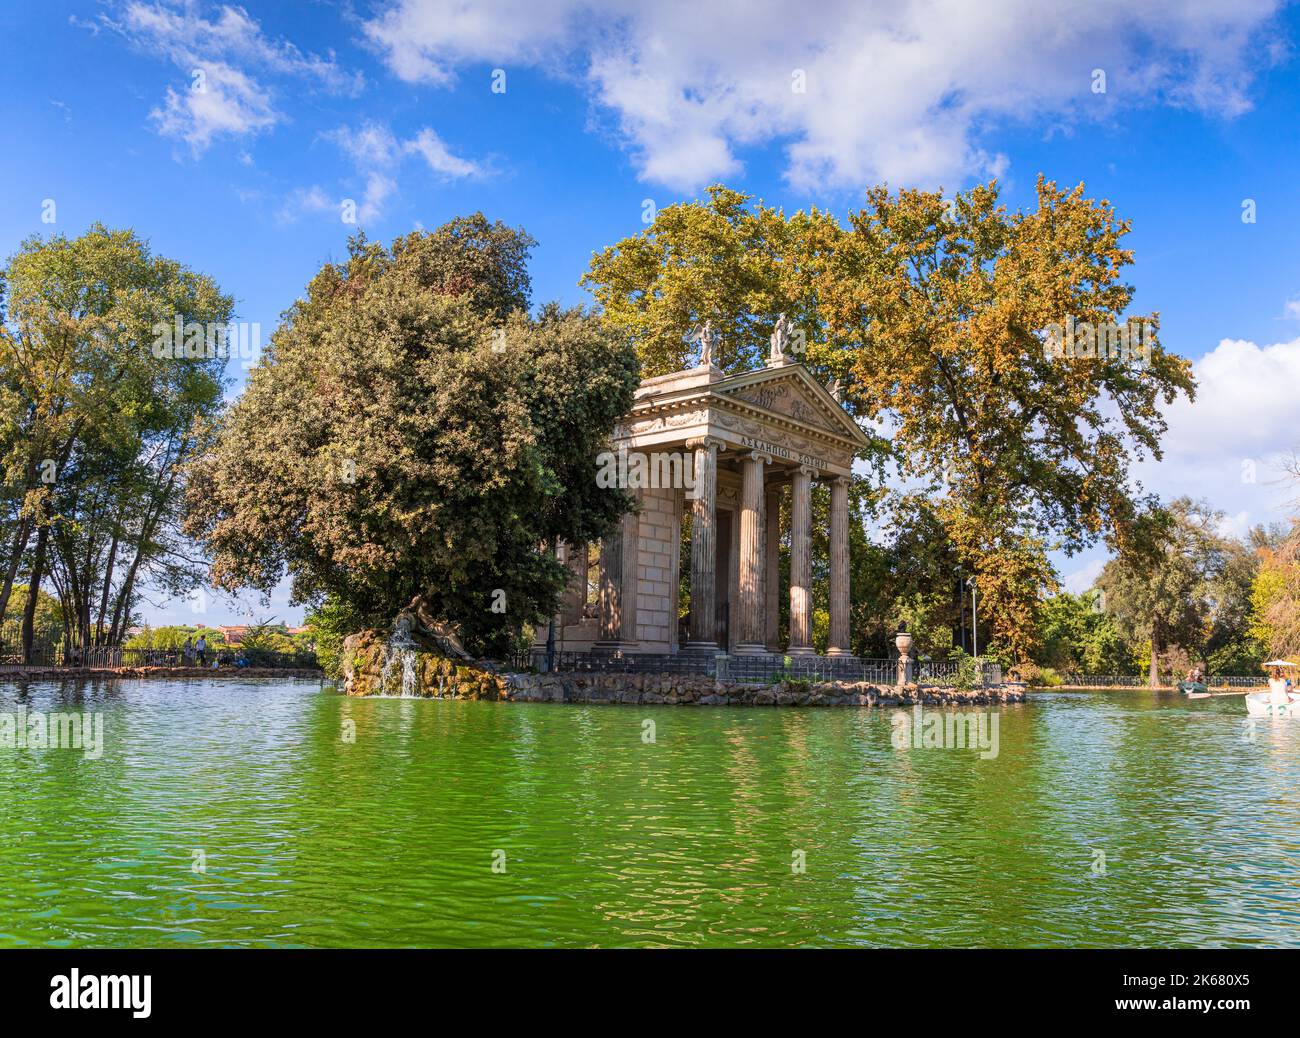 Temple d'Asclepius situé au milieu de la petite île sur le lac artificiel dans les jardins de la Villa Borghèse, Rome, Italie. Banque D'Images